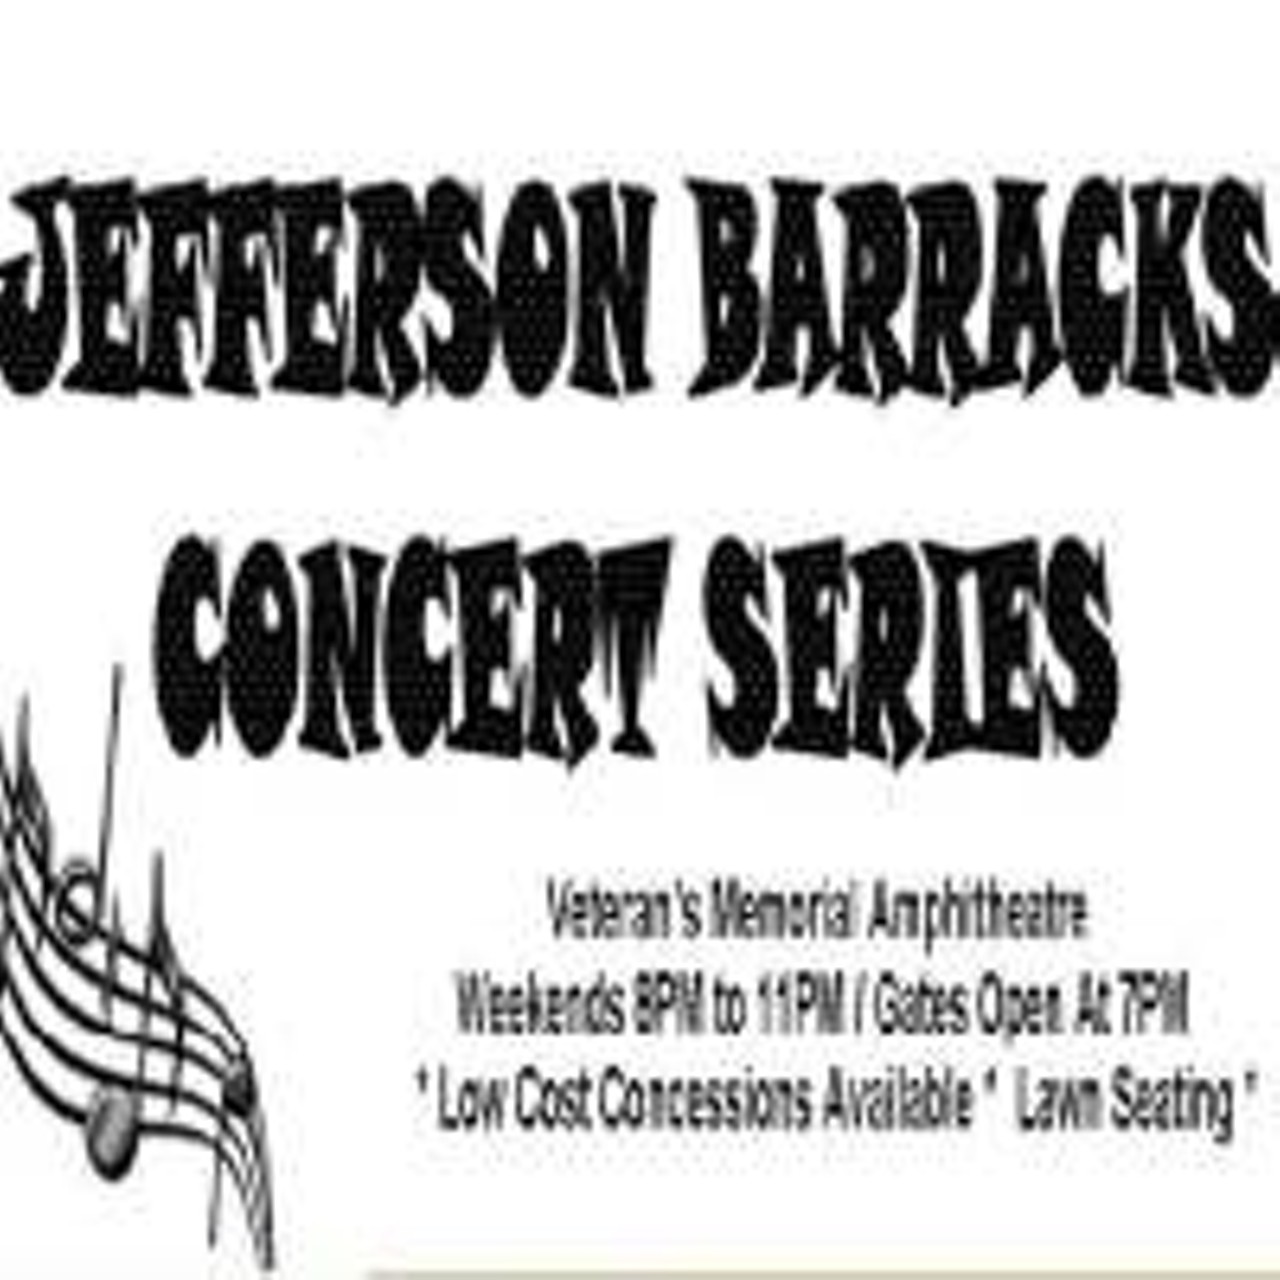 Jefferson Barracks Summer Concert Series